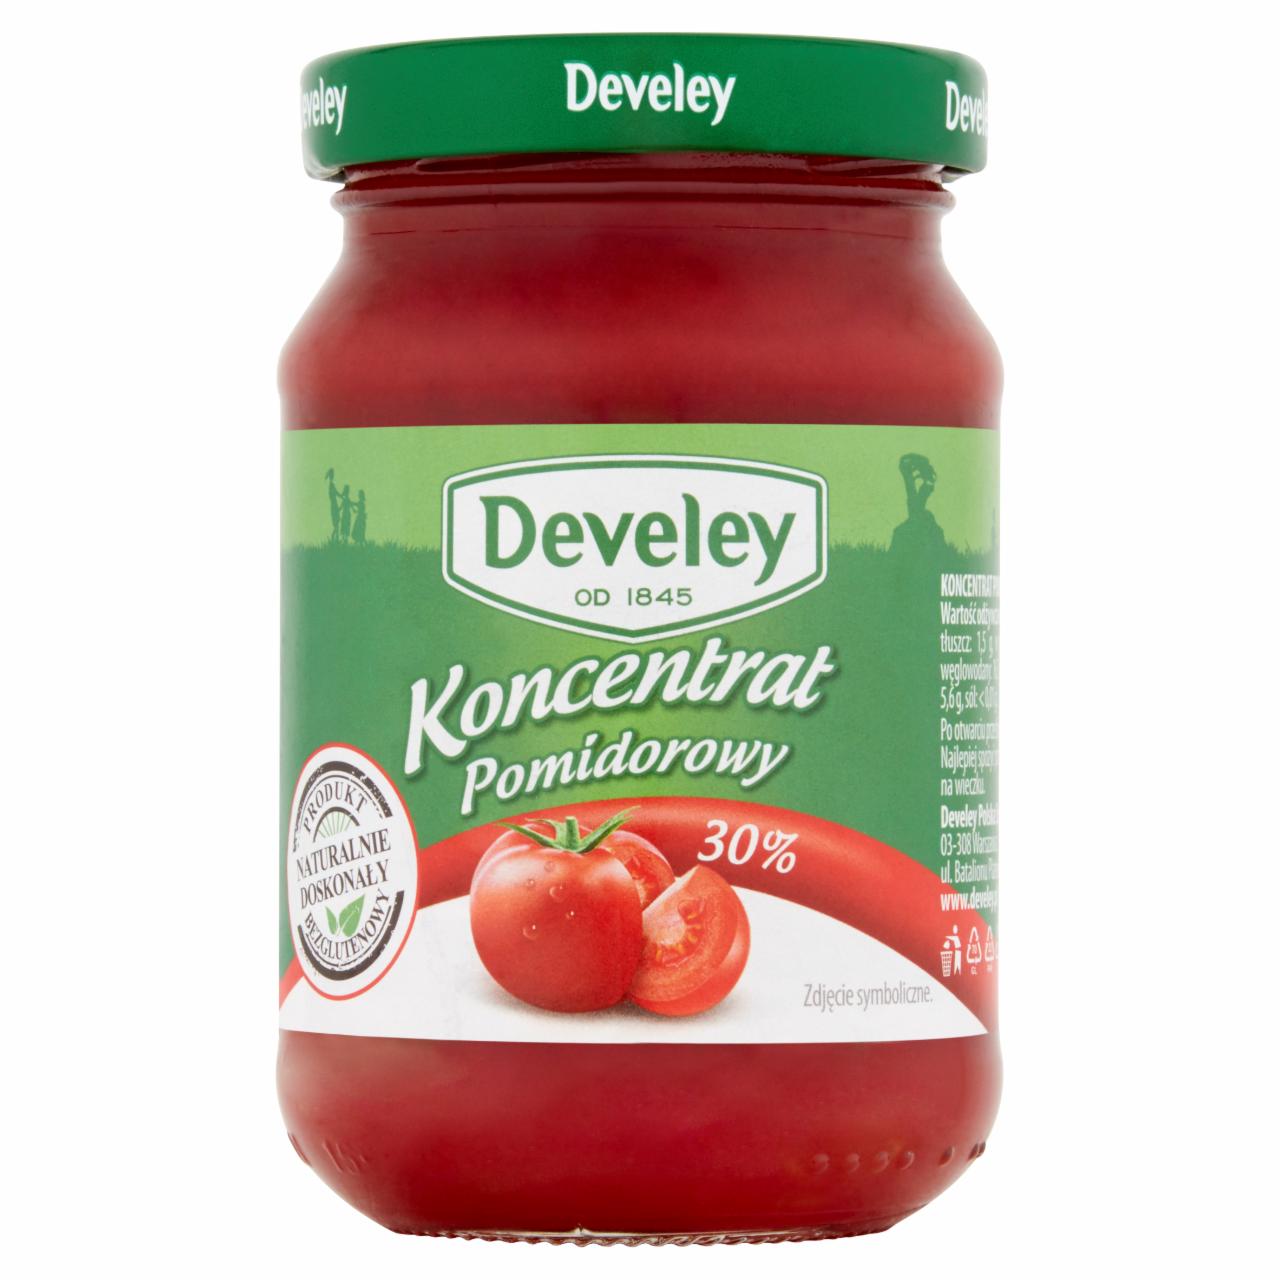 Zdjęcia - Develey Koncentrat pomidorowy 30% 180 g